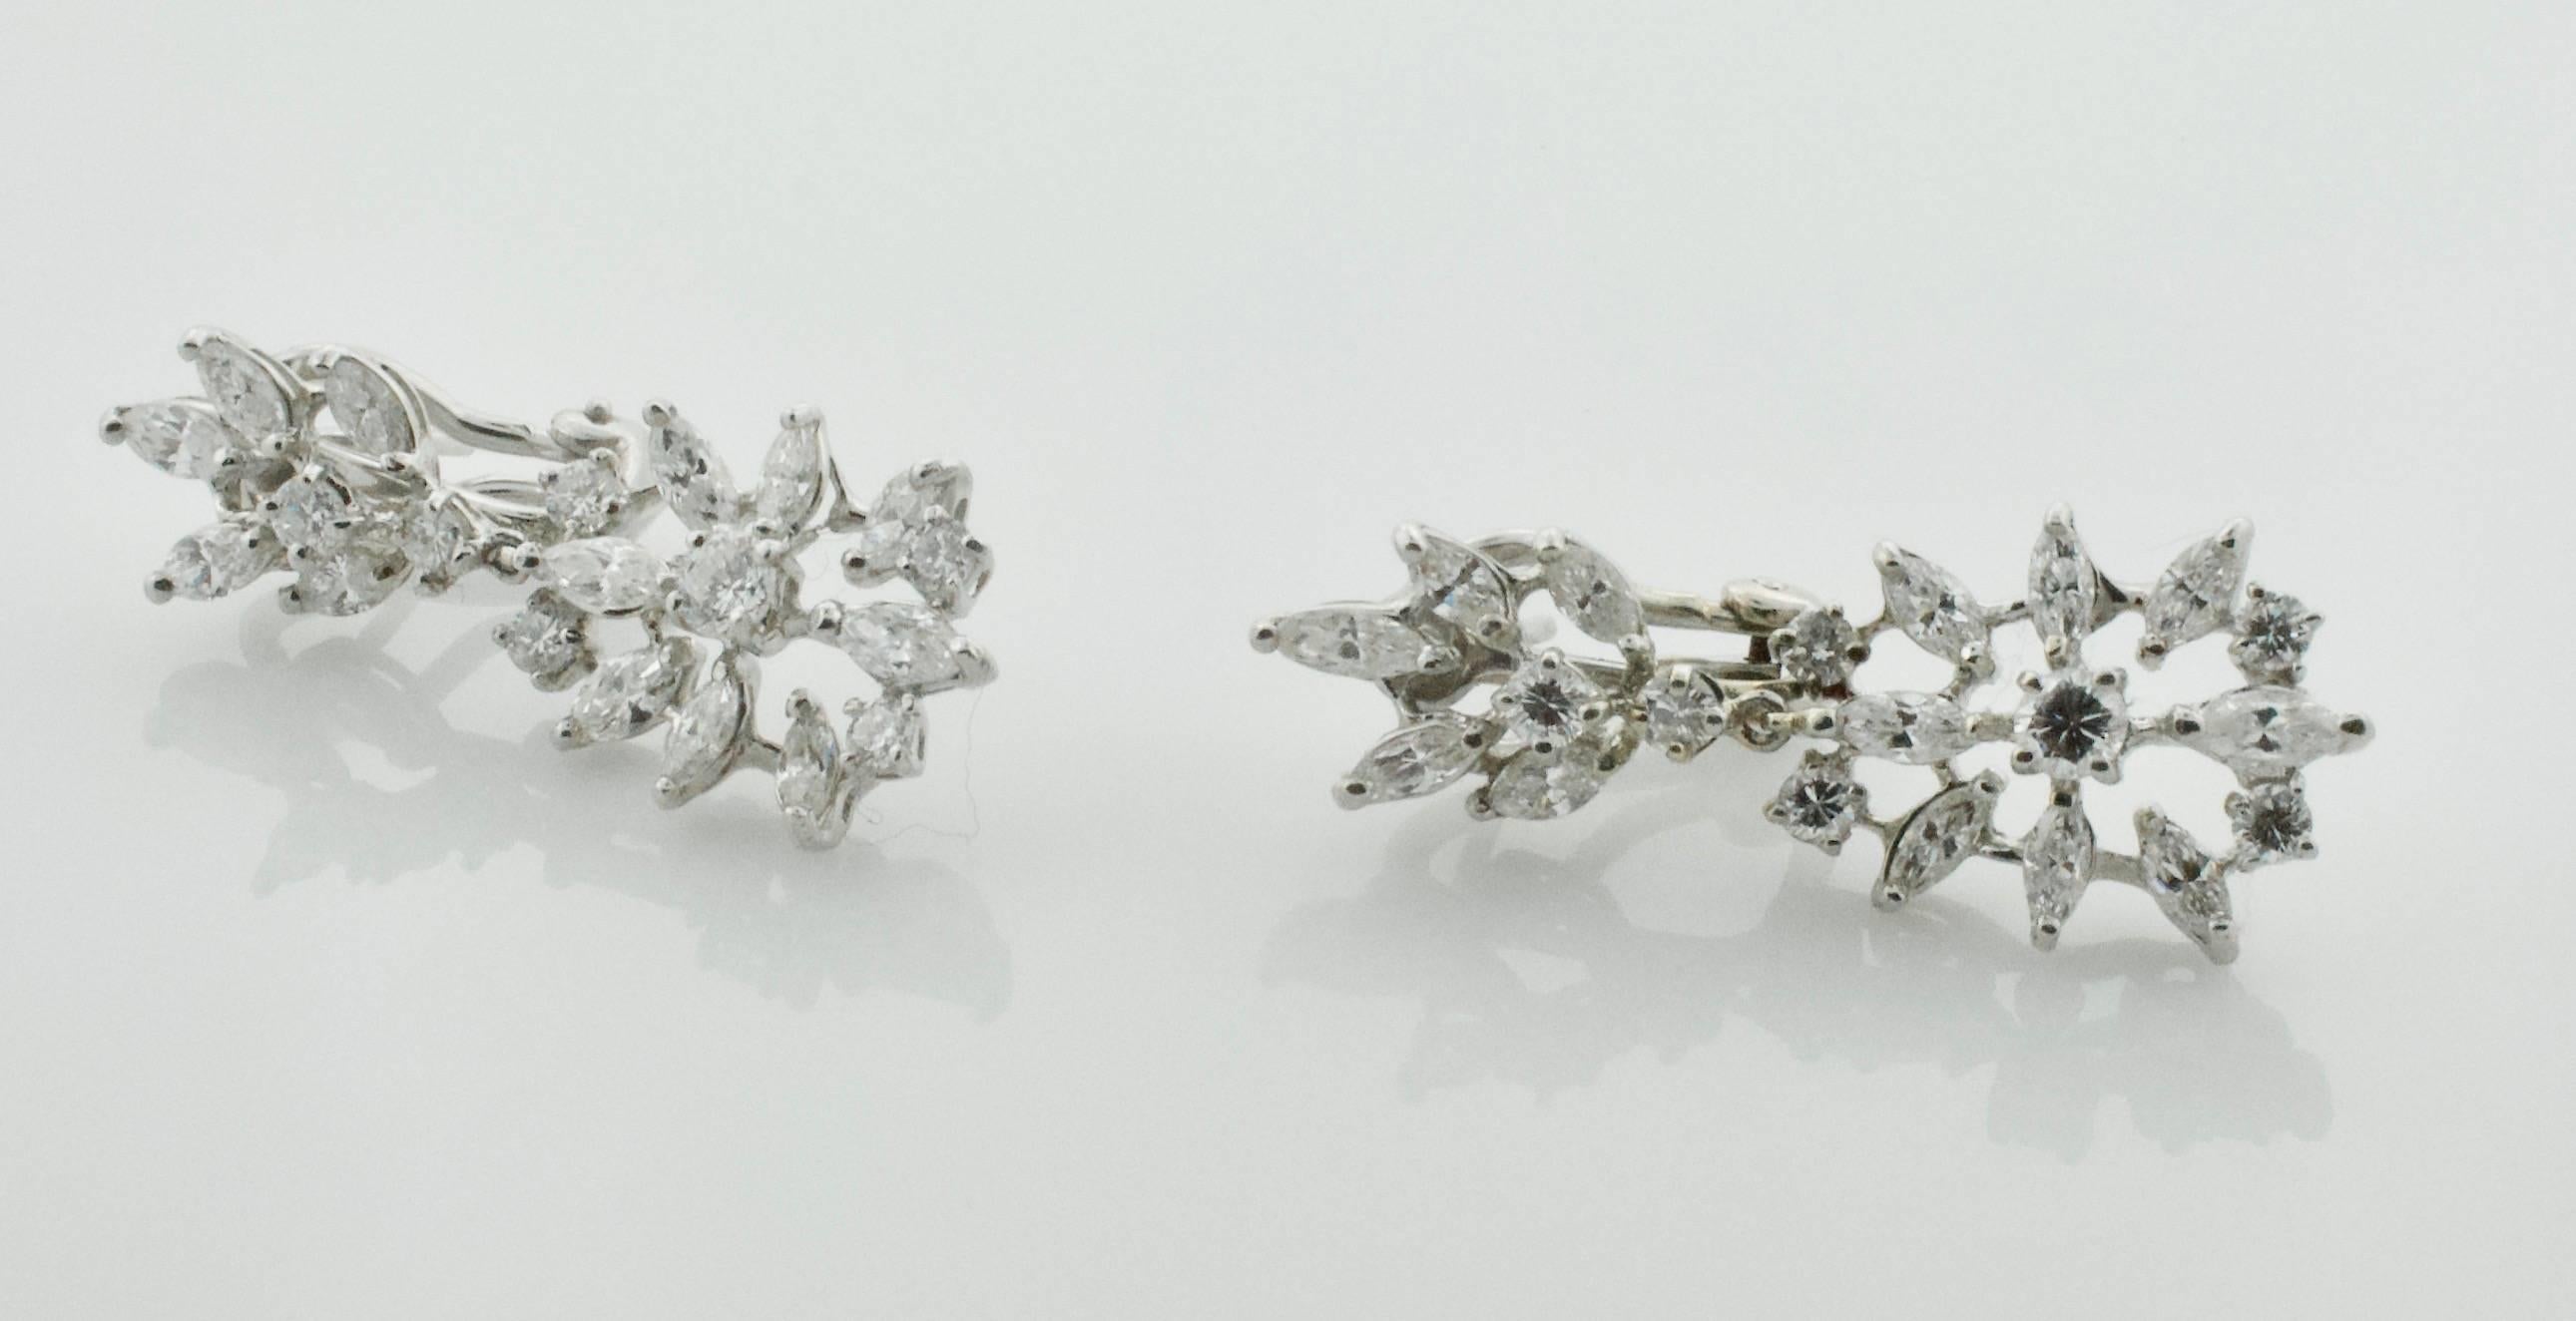 Diamantohrringe 2,90 Karat CIRCA 1950er Jahre
Wir stellen Ihnen unsere exquisiten baumelnden Diamantohrringe aus den 1950er Jahren vor, die ein Gesamtkaratgewicht von 2,90 aufweisen. Diese Ohrringe zeichnen sich durch ein zeitloses Design aus, das